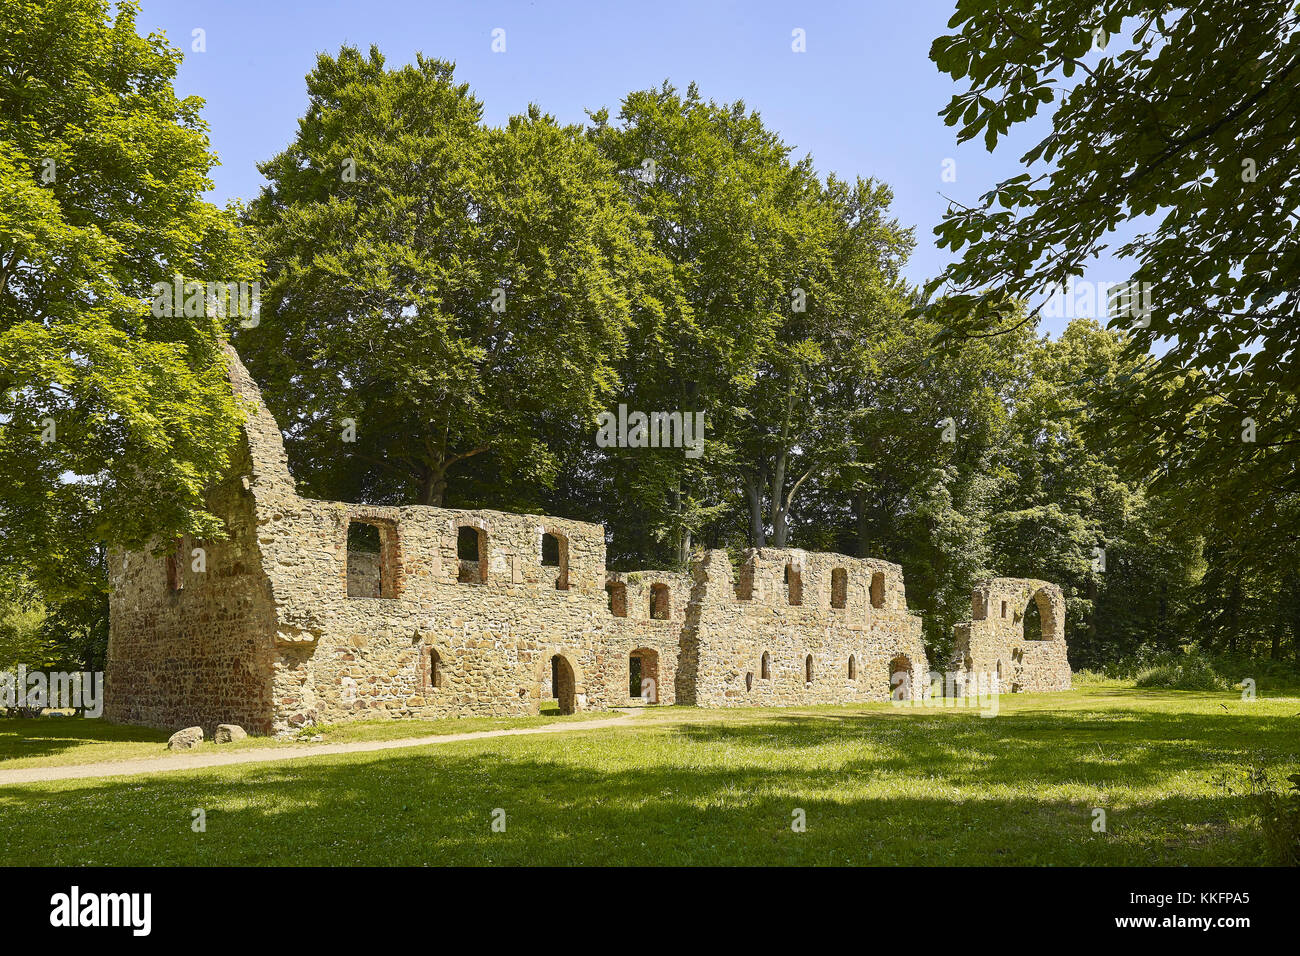 Monastery ruin Nimbschen, Saxony, Germany Stock Photo